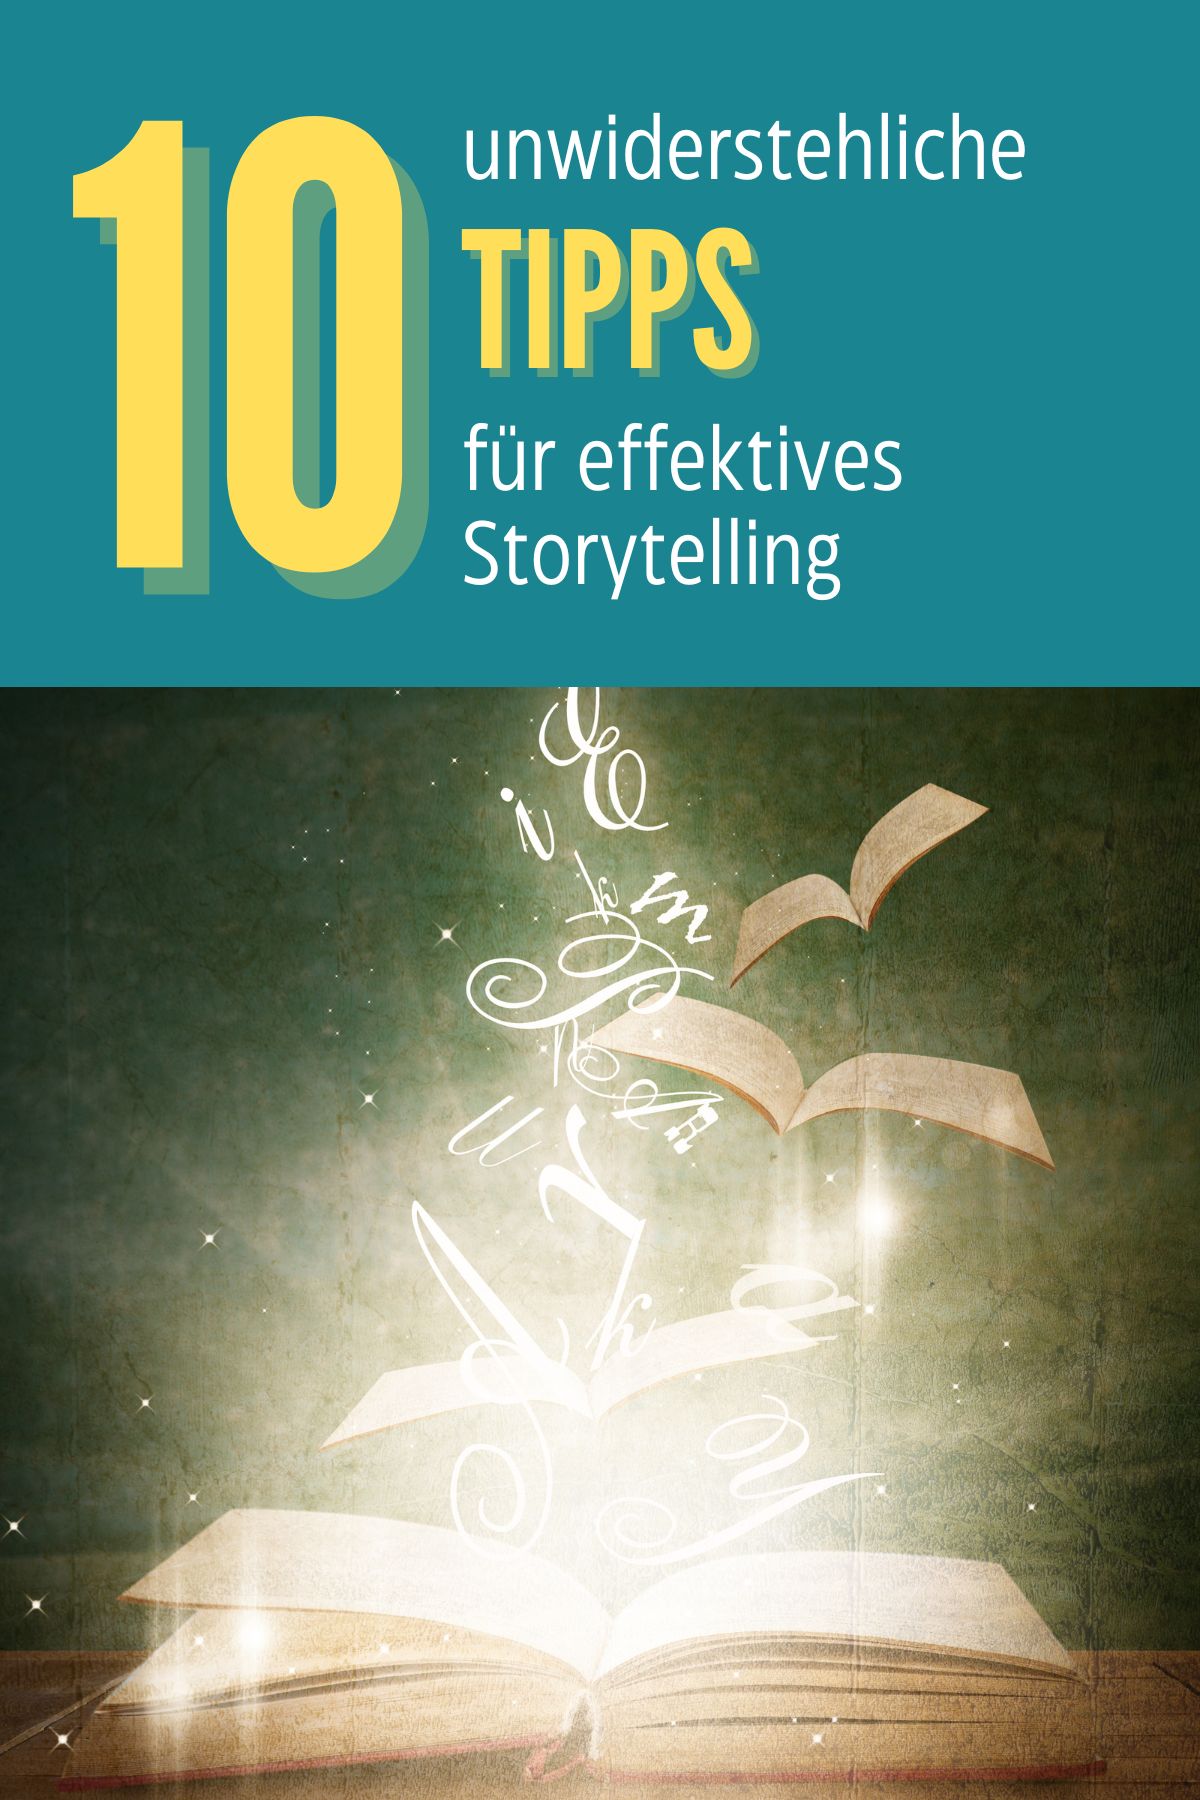 Storytelling im Business-Blogging: Wie du deine Leser mit Geschichten fesselst - Blogger-Coaching.de by Filiz Odenthal